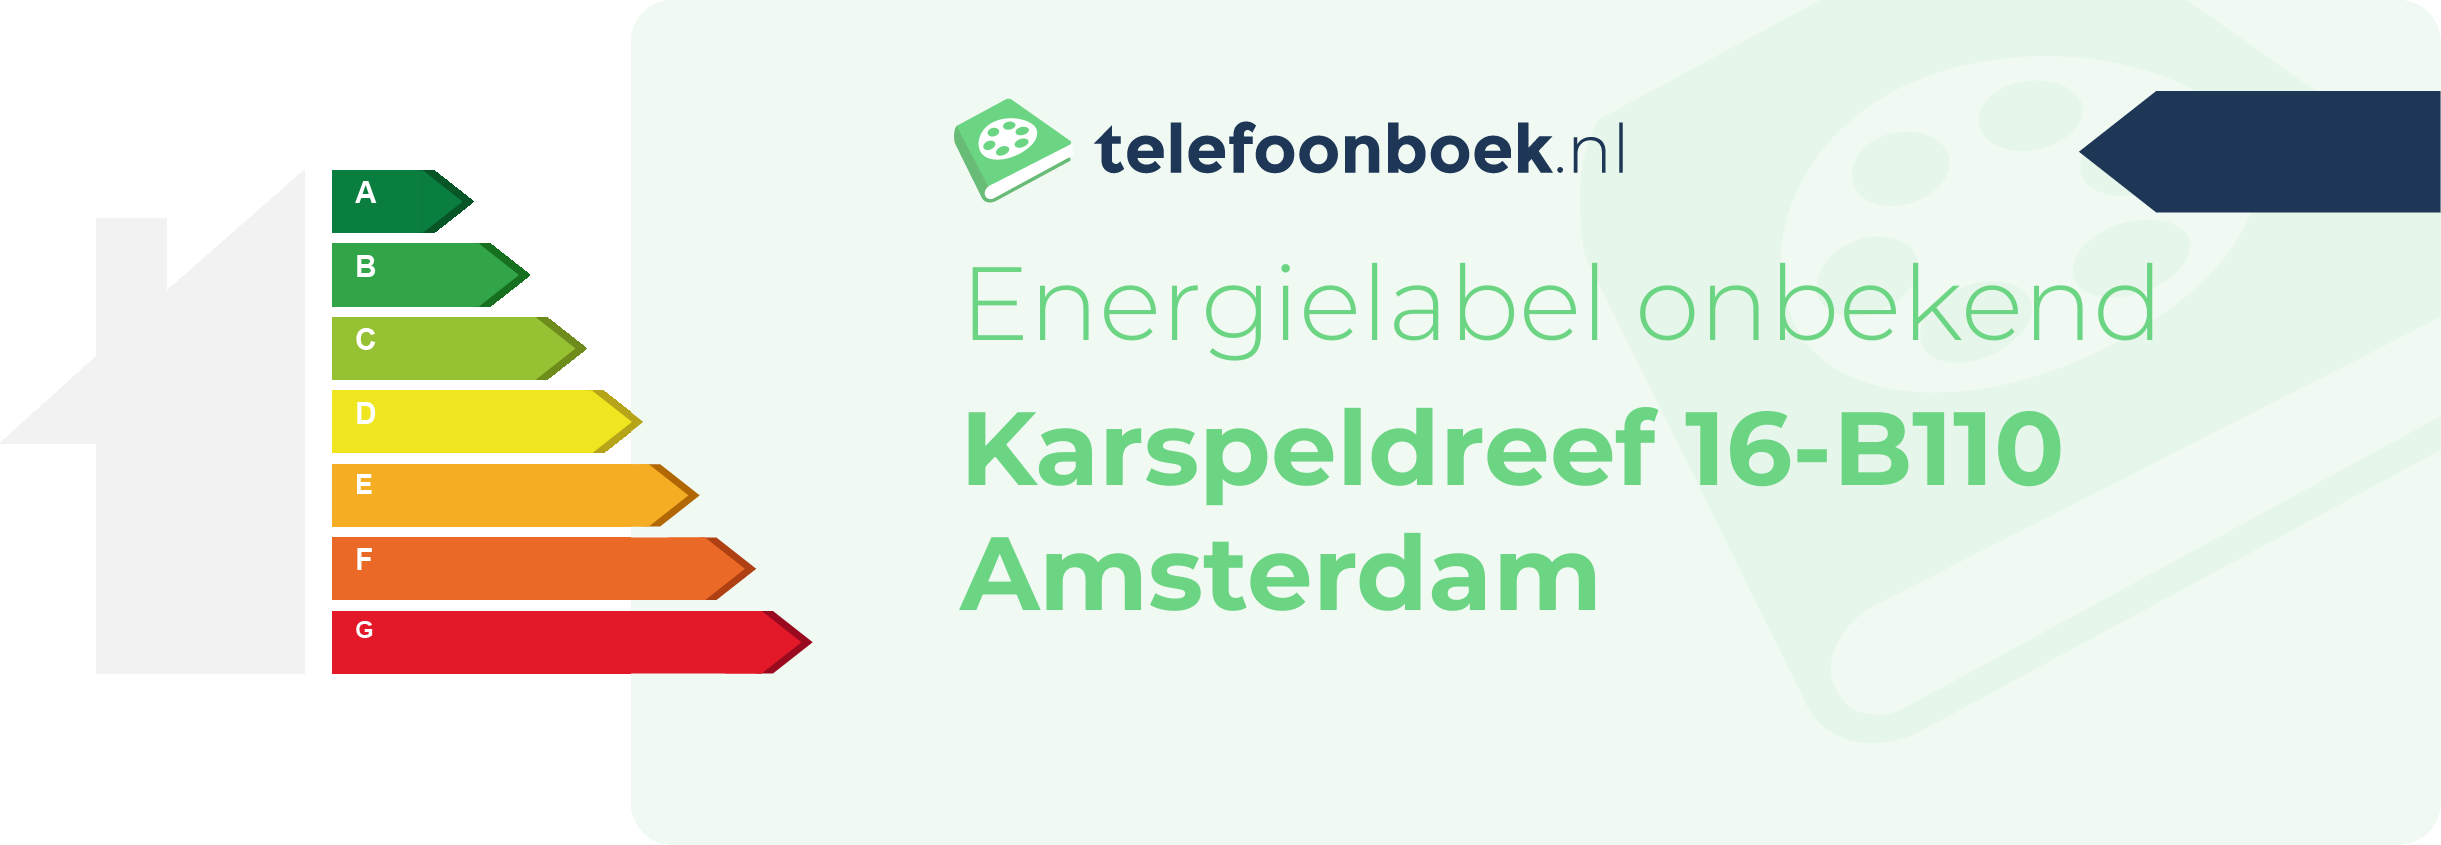 Energielabel Karspeldreef 16-B110 Amsterdam